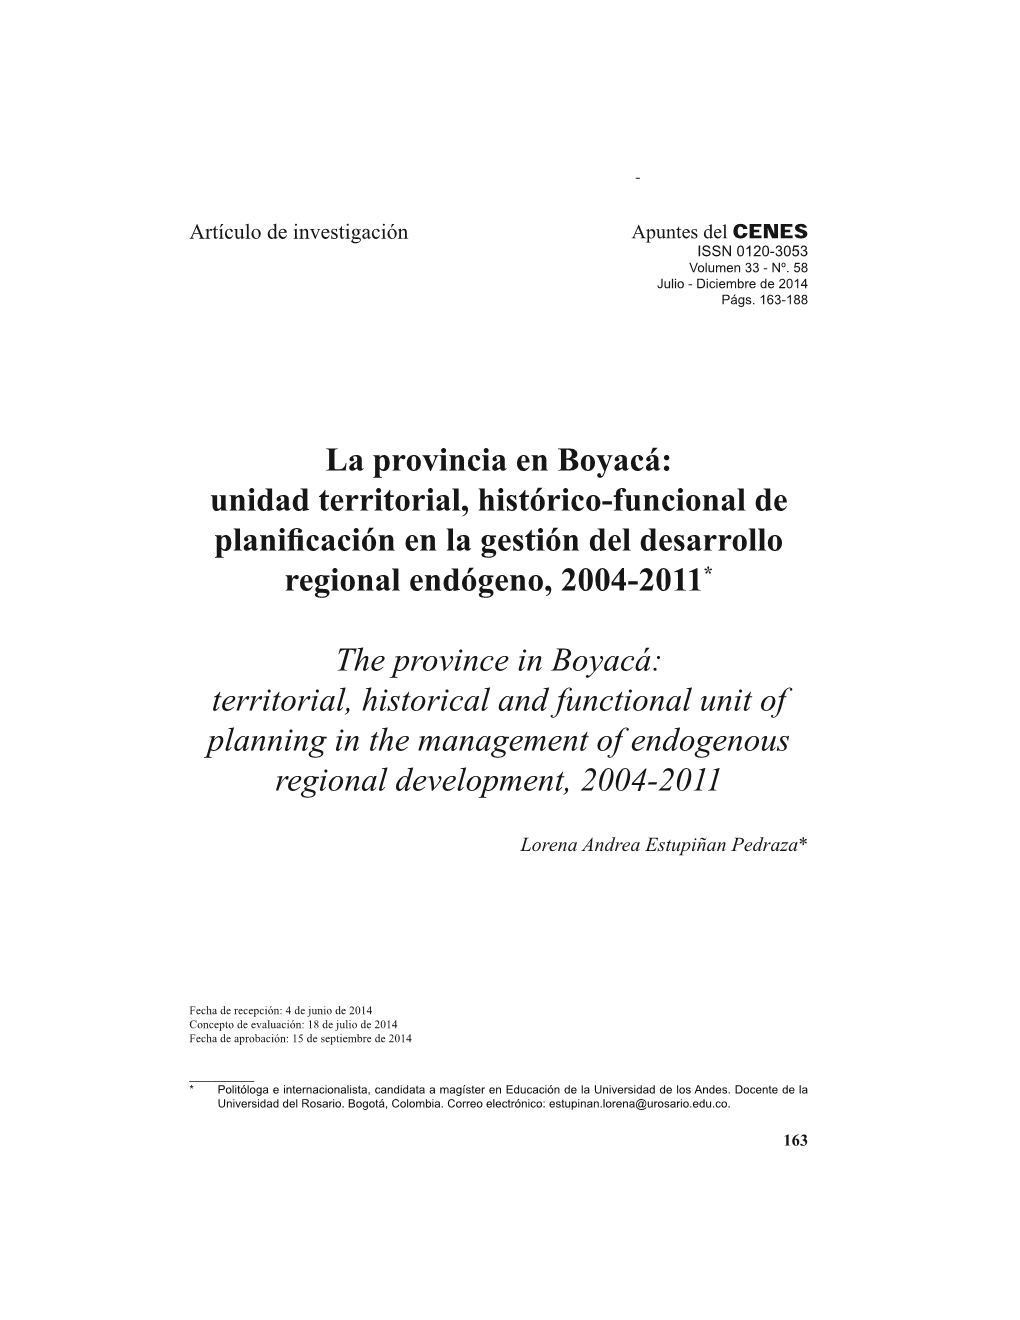 La Provincia En Boyacá: Unidad Territorial, Histórico-Funcional De SODQL¿FdflyqHQODJhvwlyqGHOGHVDUUROOR Regional Endógeno, 2004-2011*